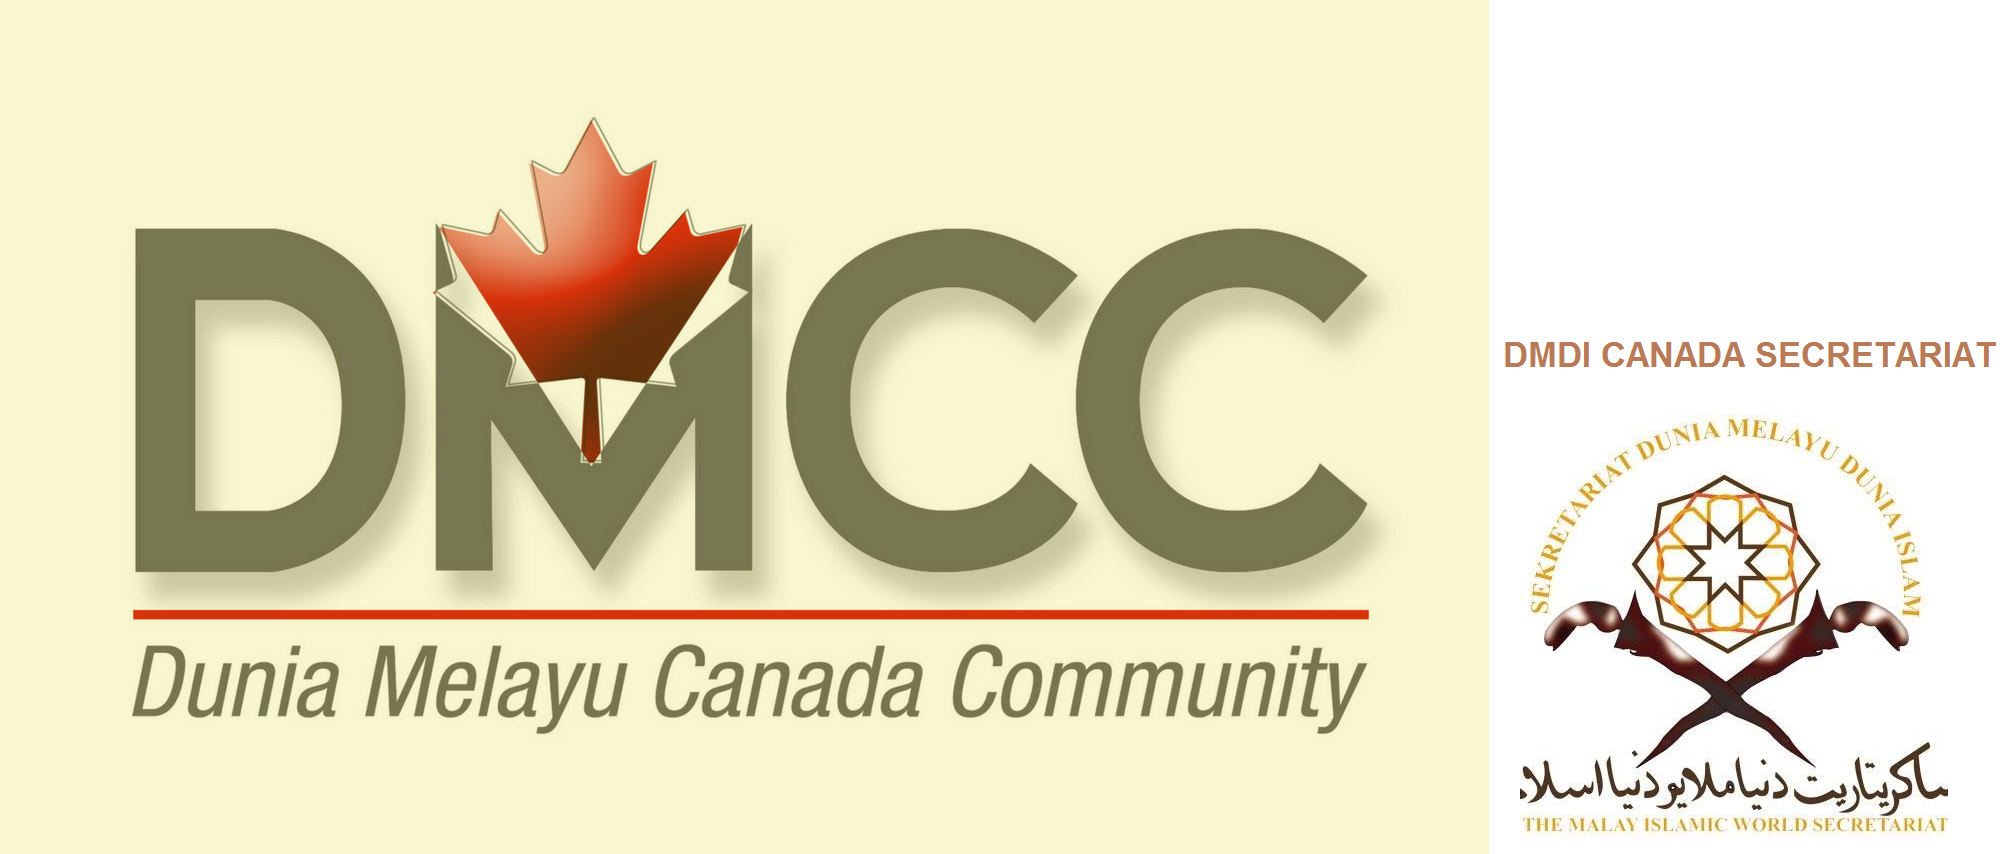 Dunia Melayu Canada Community